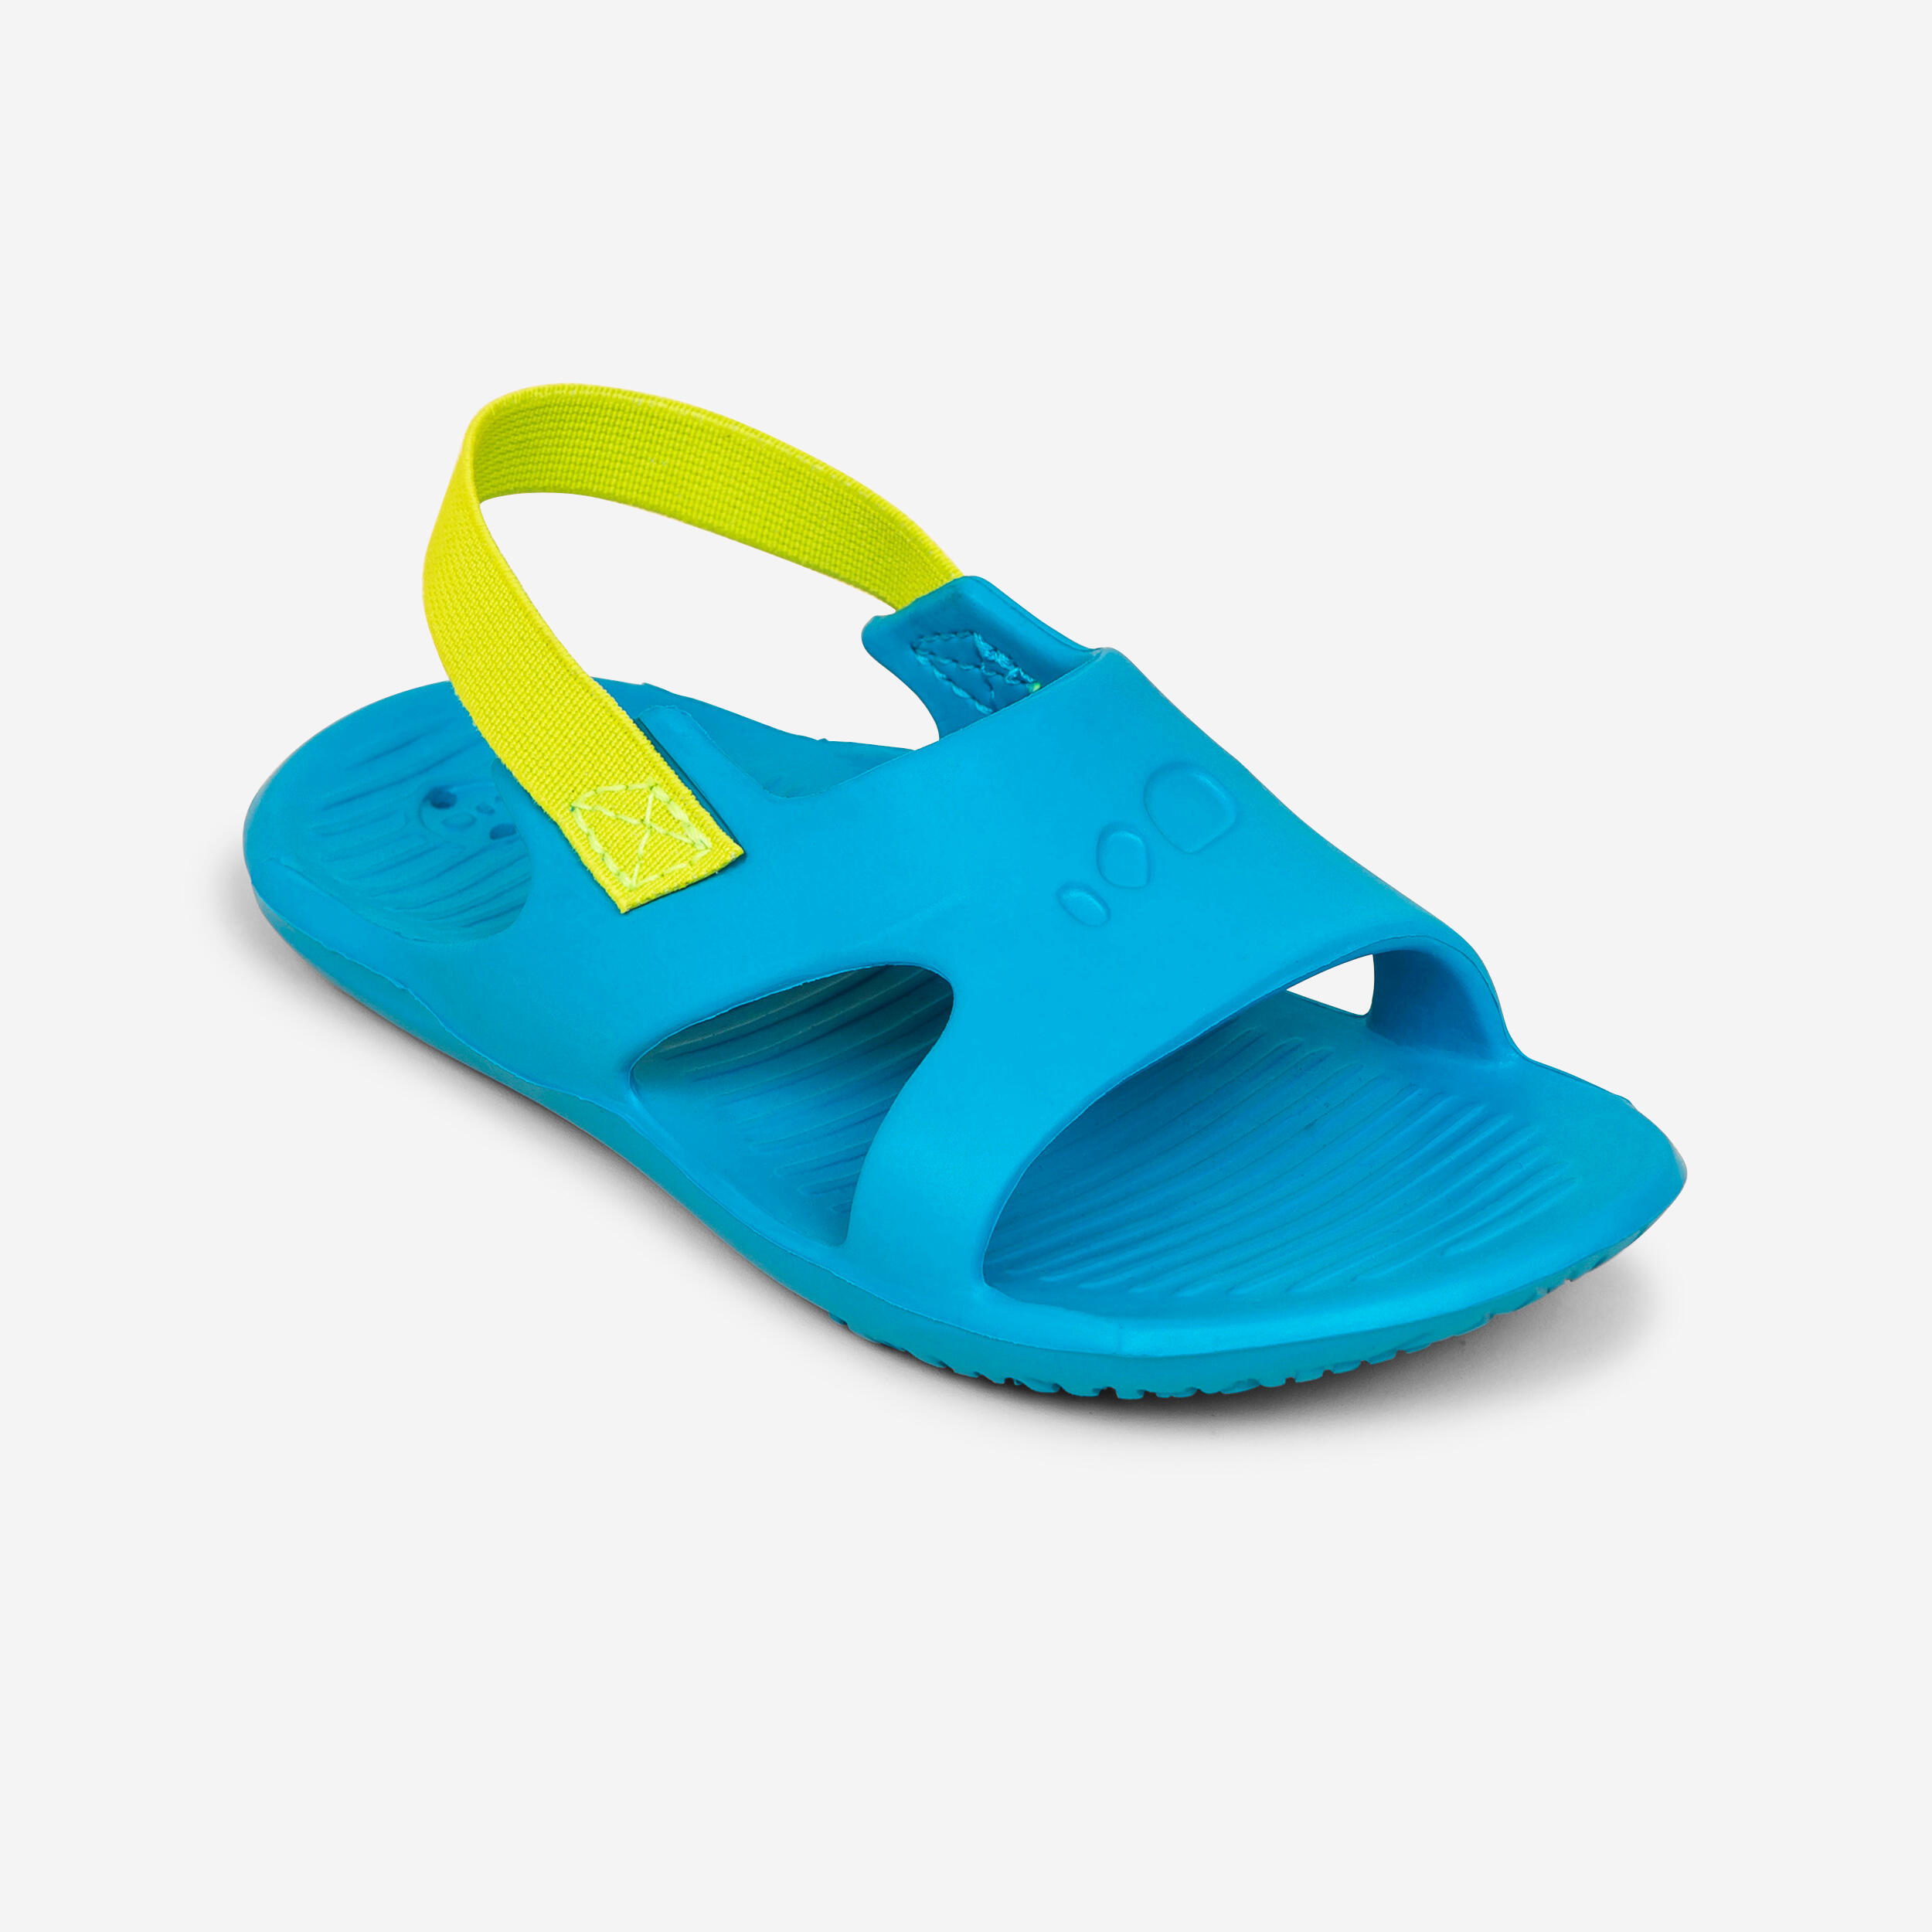 Kids' Pool Sandal SLAP 100 BASIC - Blue/Green 4/5